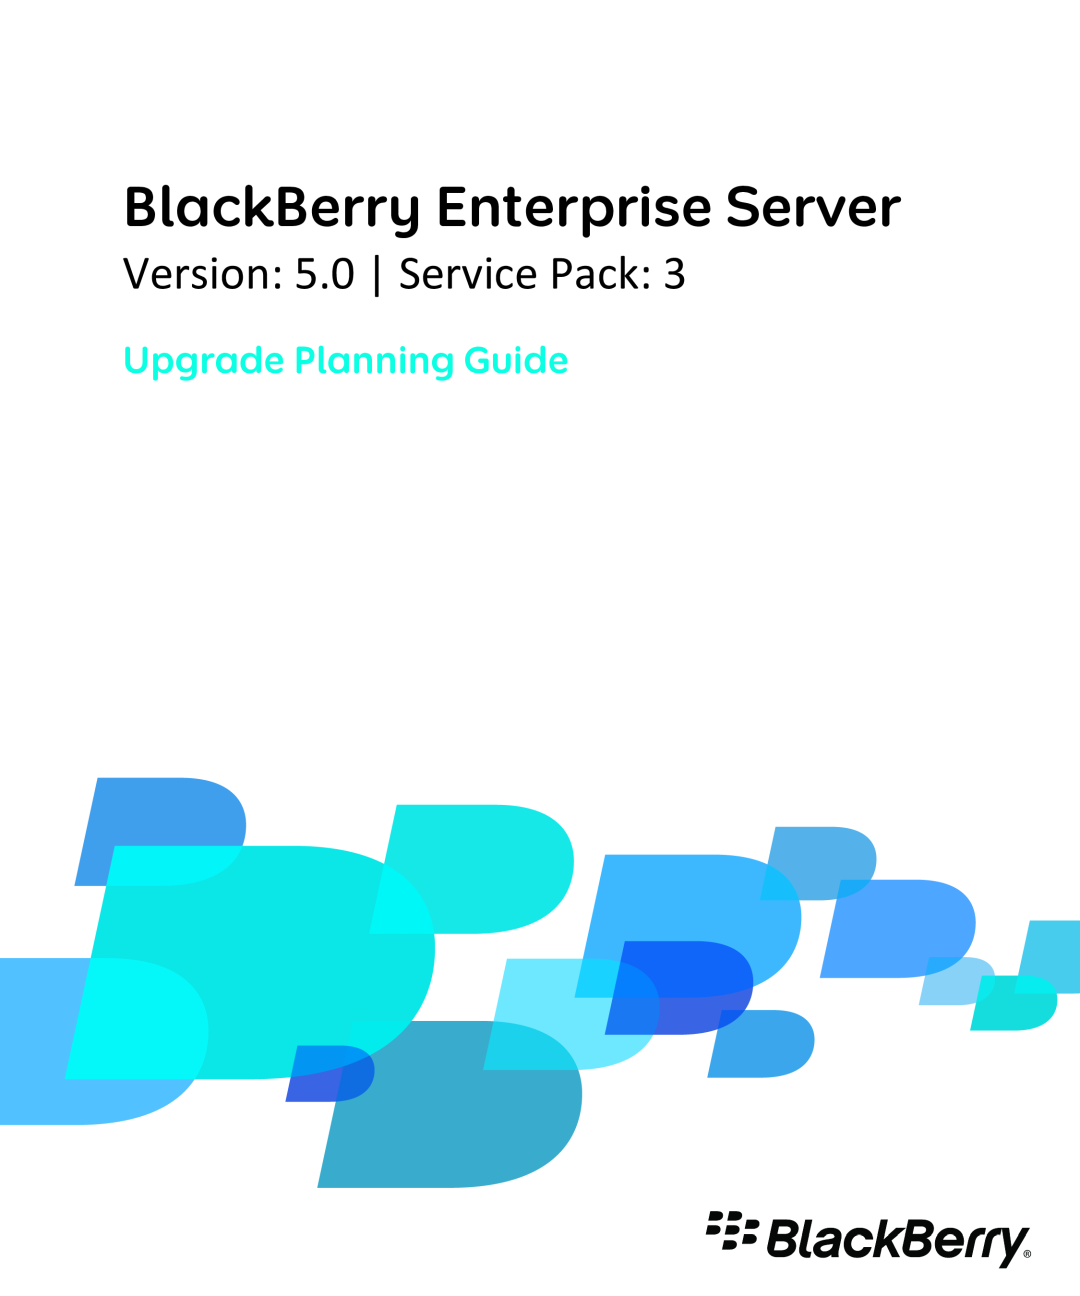 Blackberry blackberry enterprise server manual BlackBerry Enterprise Server, Version 5.0 Service Pack 